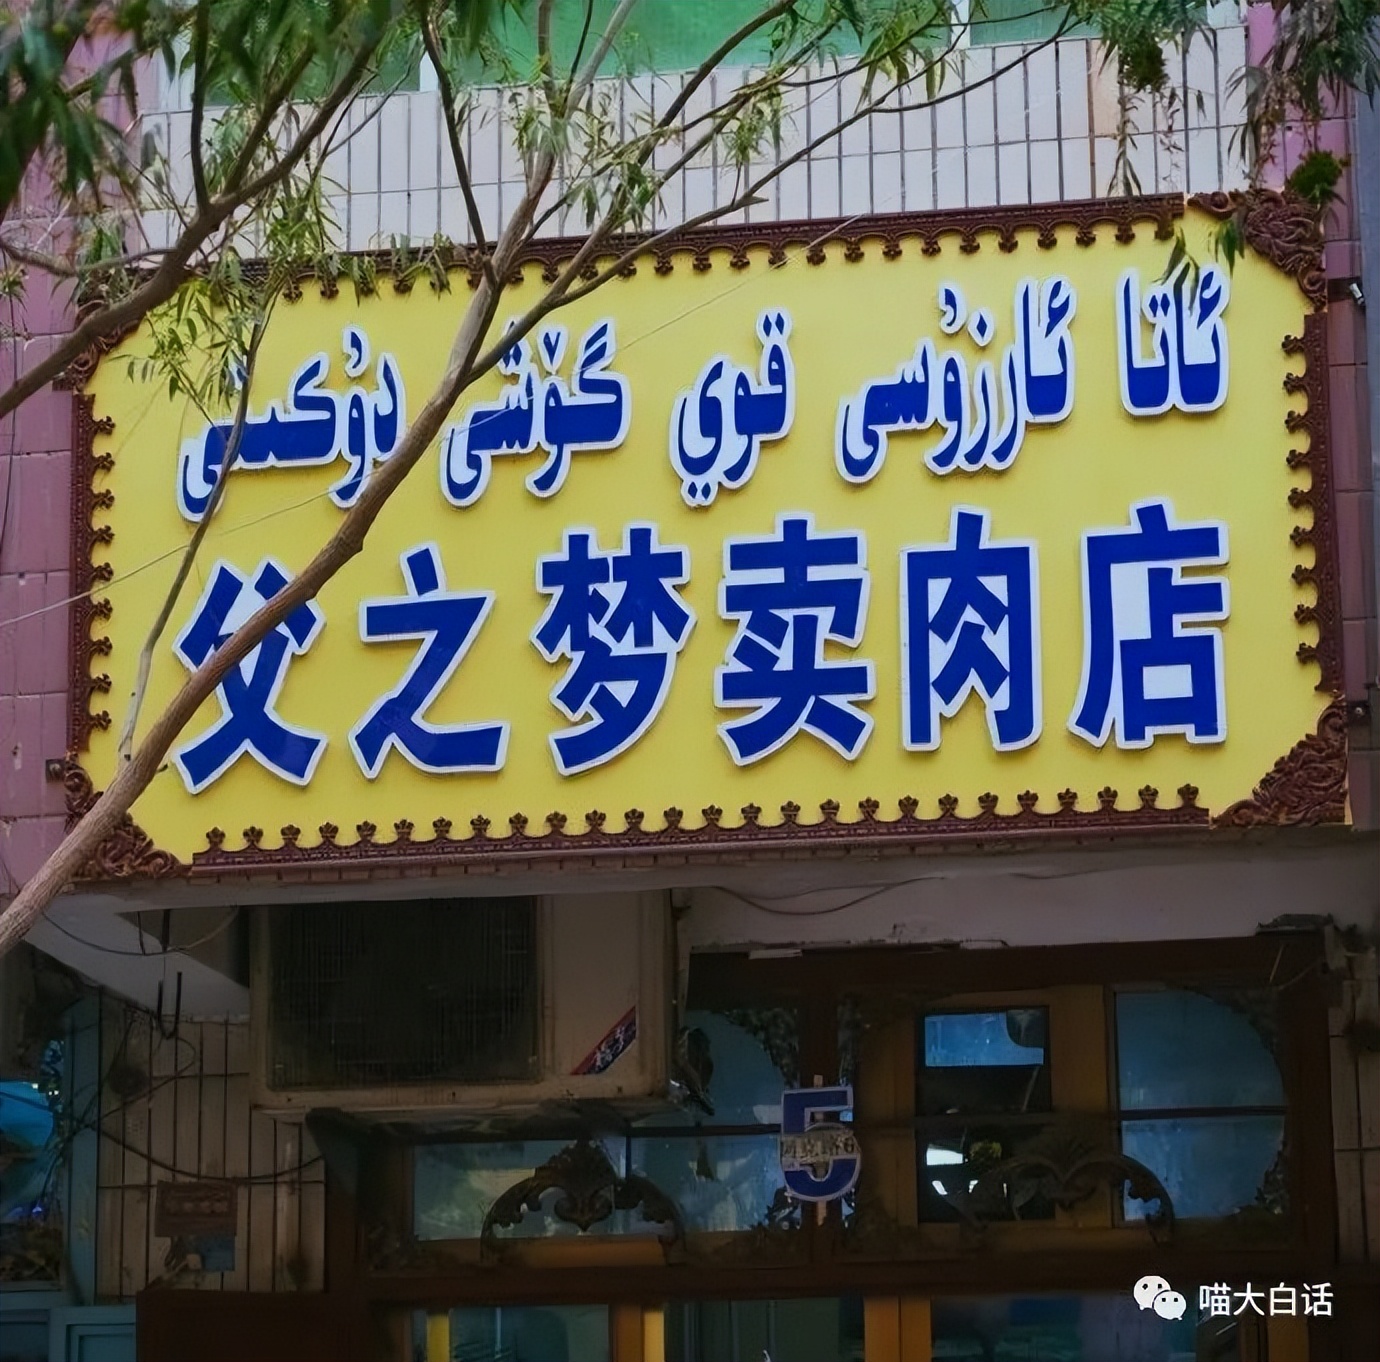 “新疆的店名能有多简单粗暴？”哈哈哈哈有被可爱到